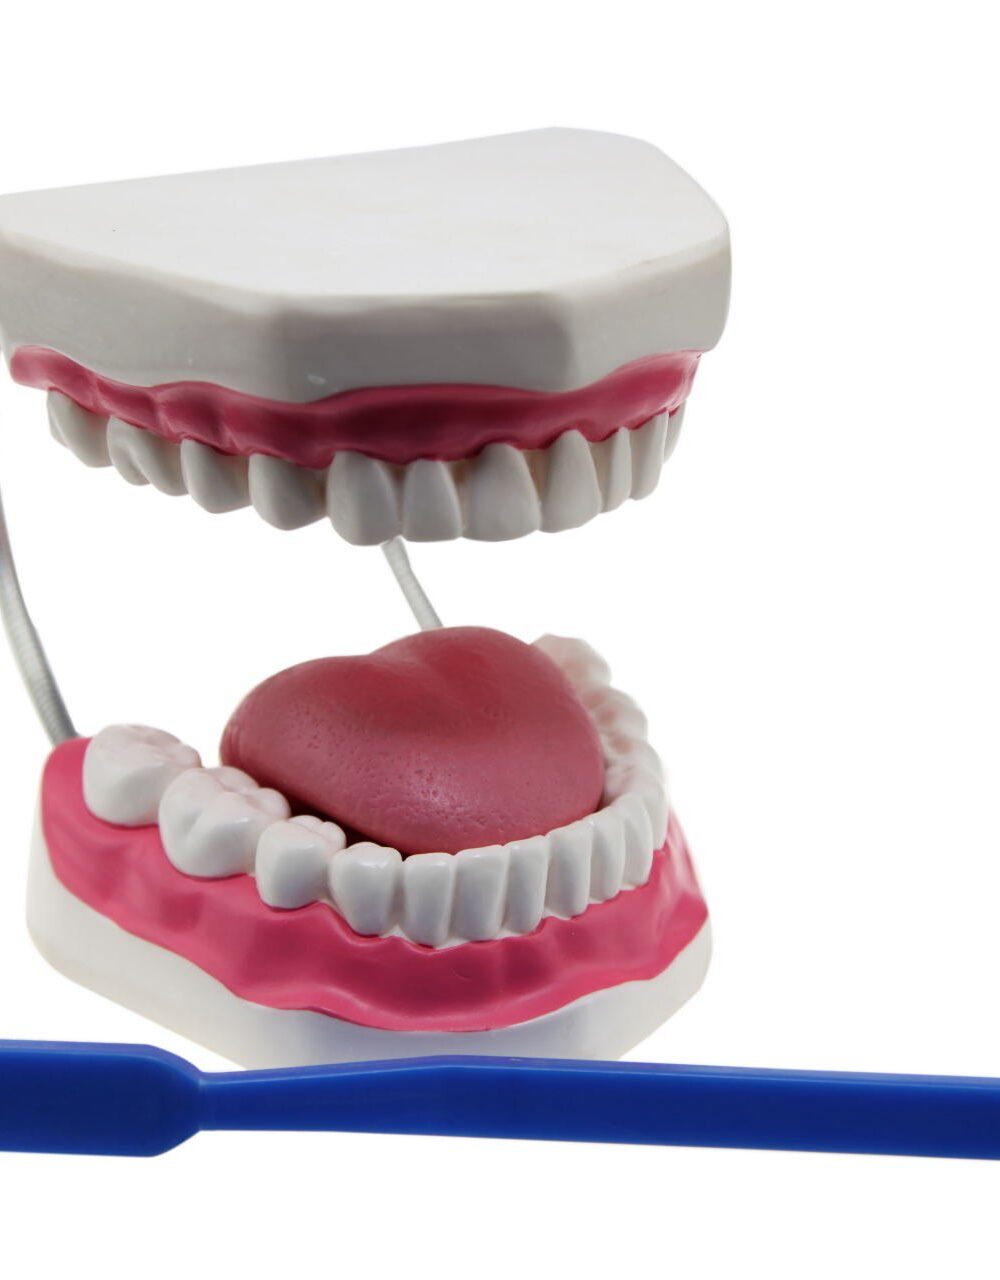 Diş Fırçalama Modeli